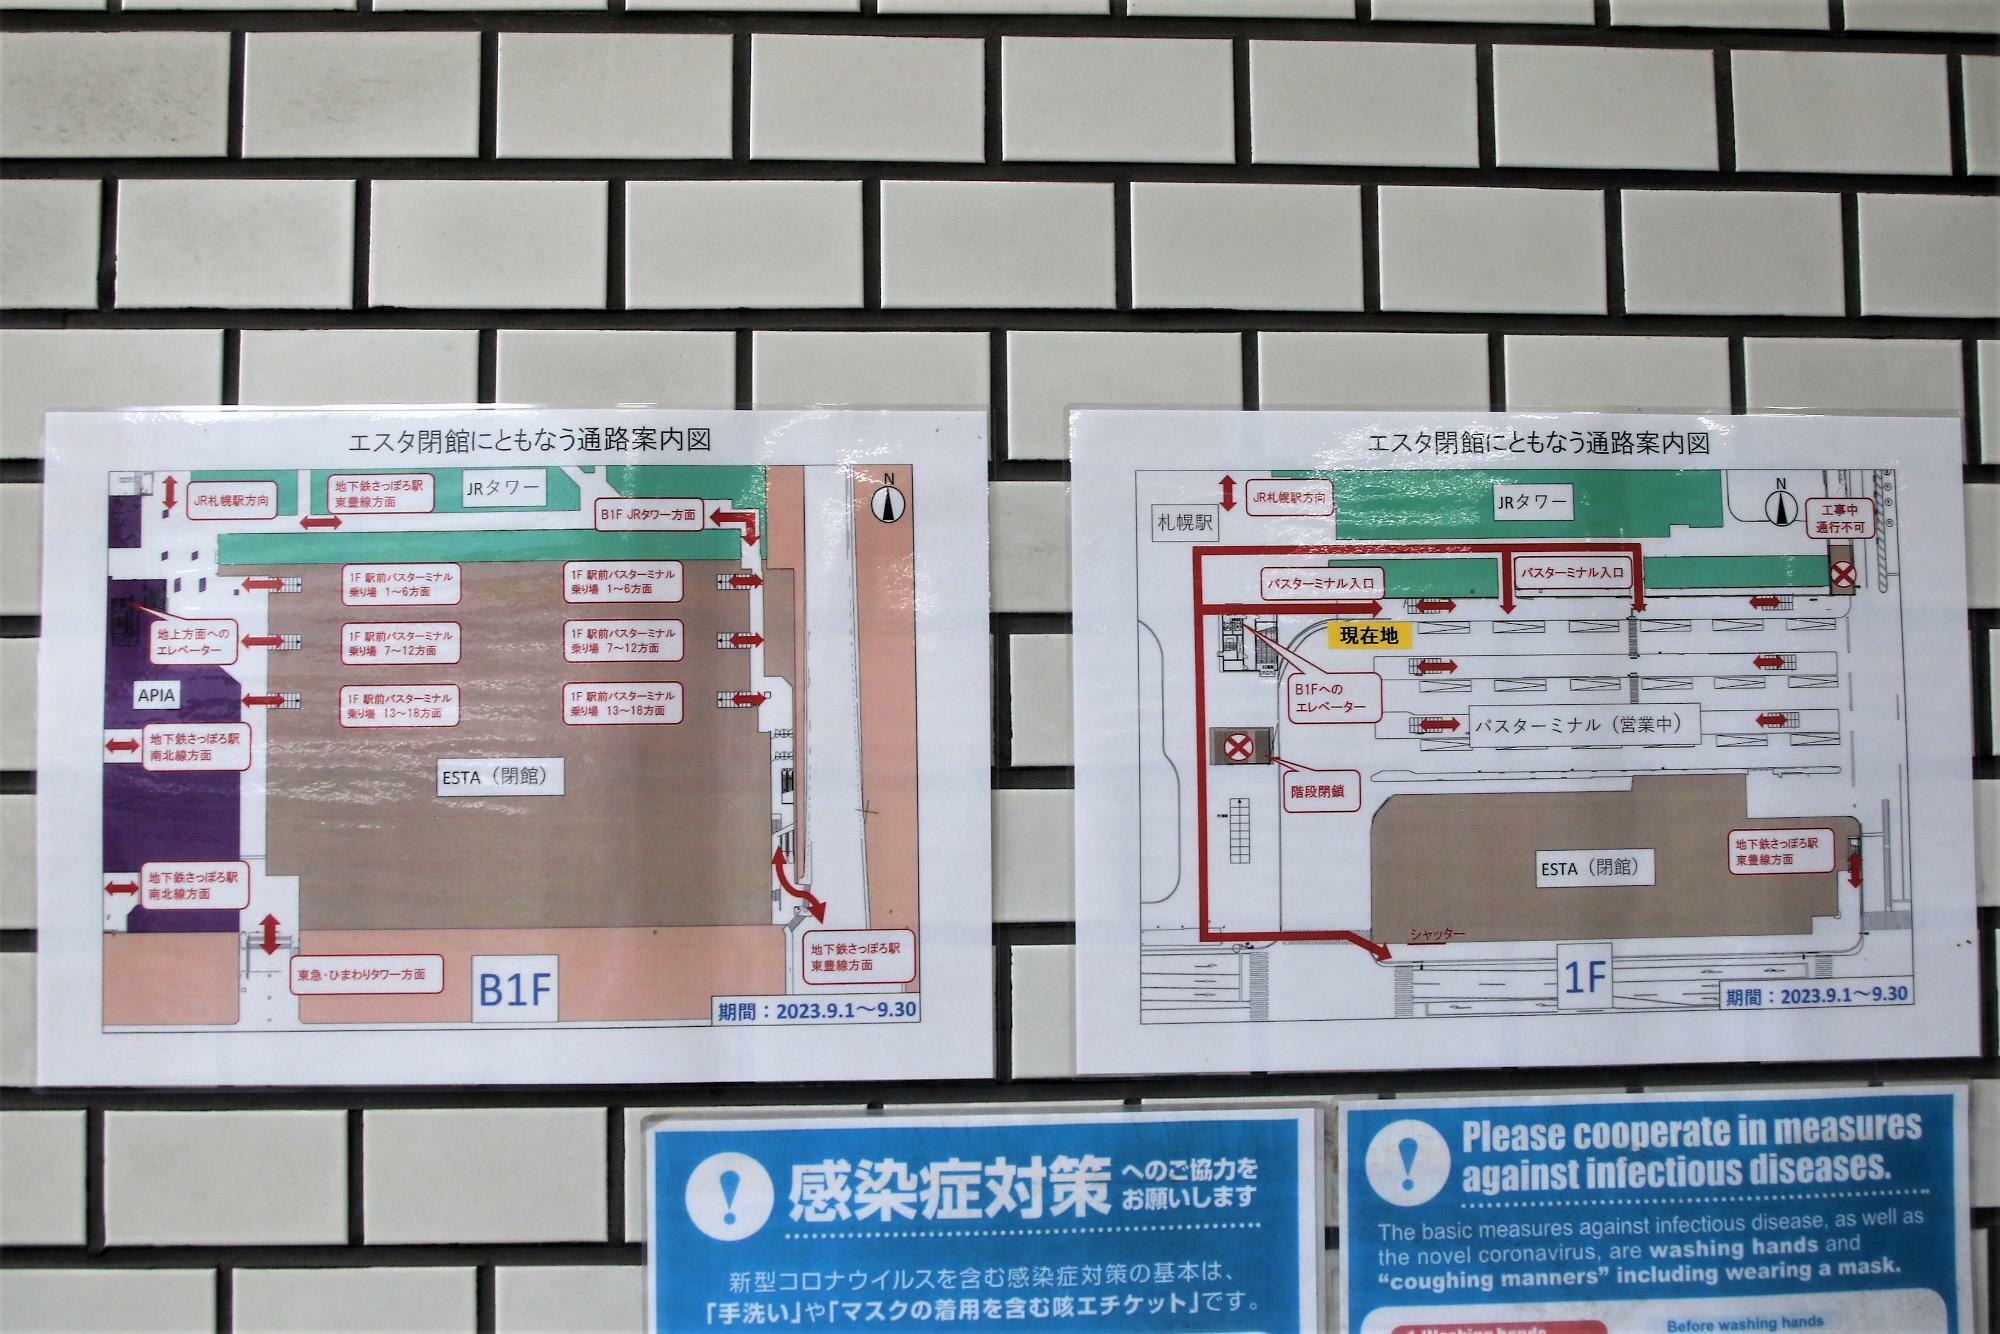 札幌駅バスターミナル内にあった通路案内図